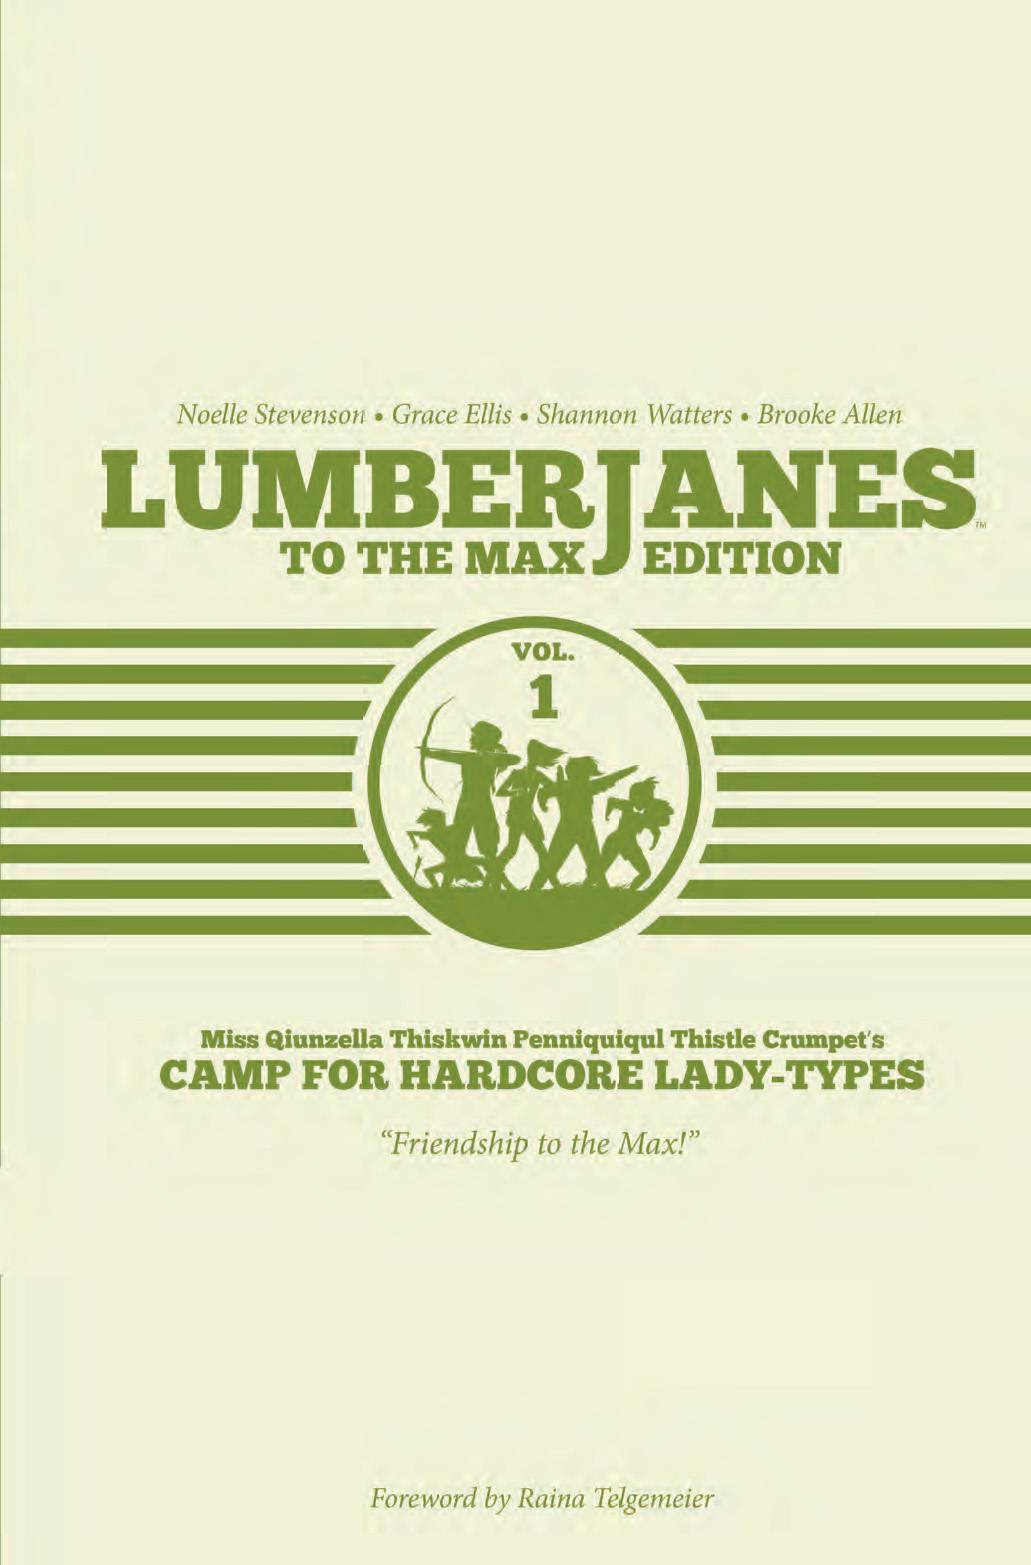 Lumberjanes HC1